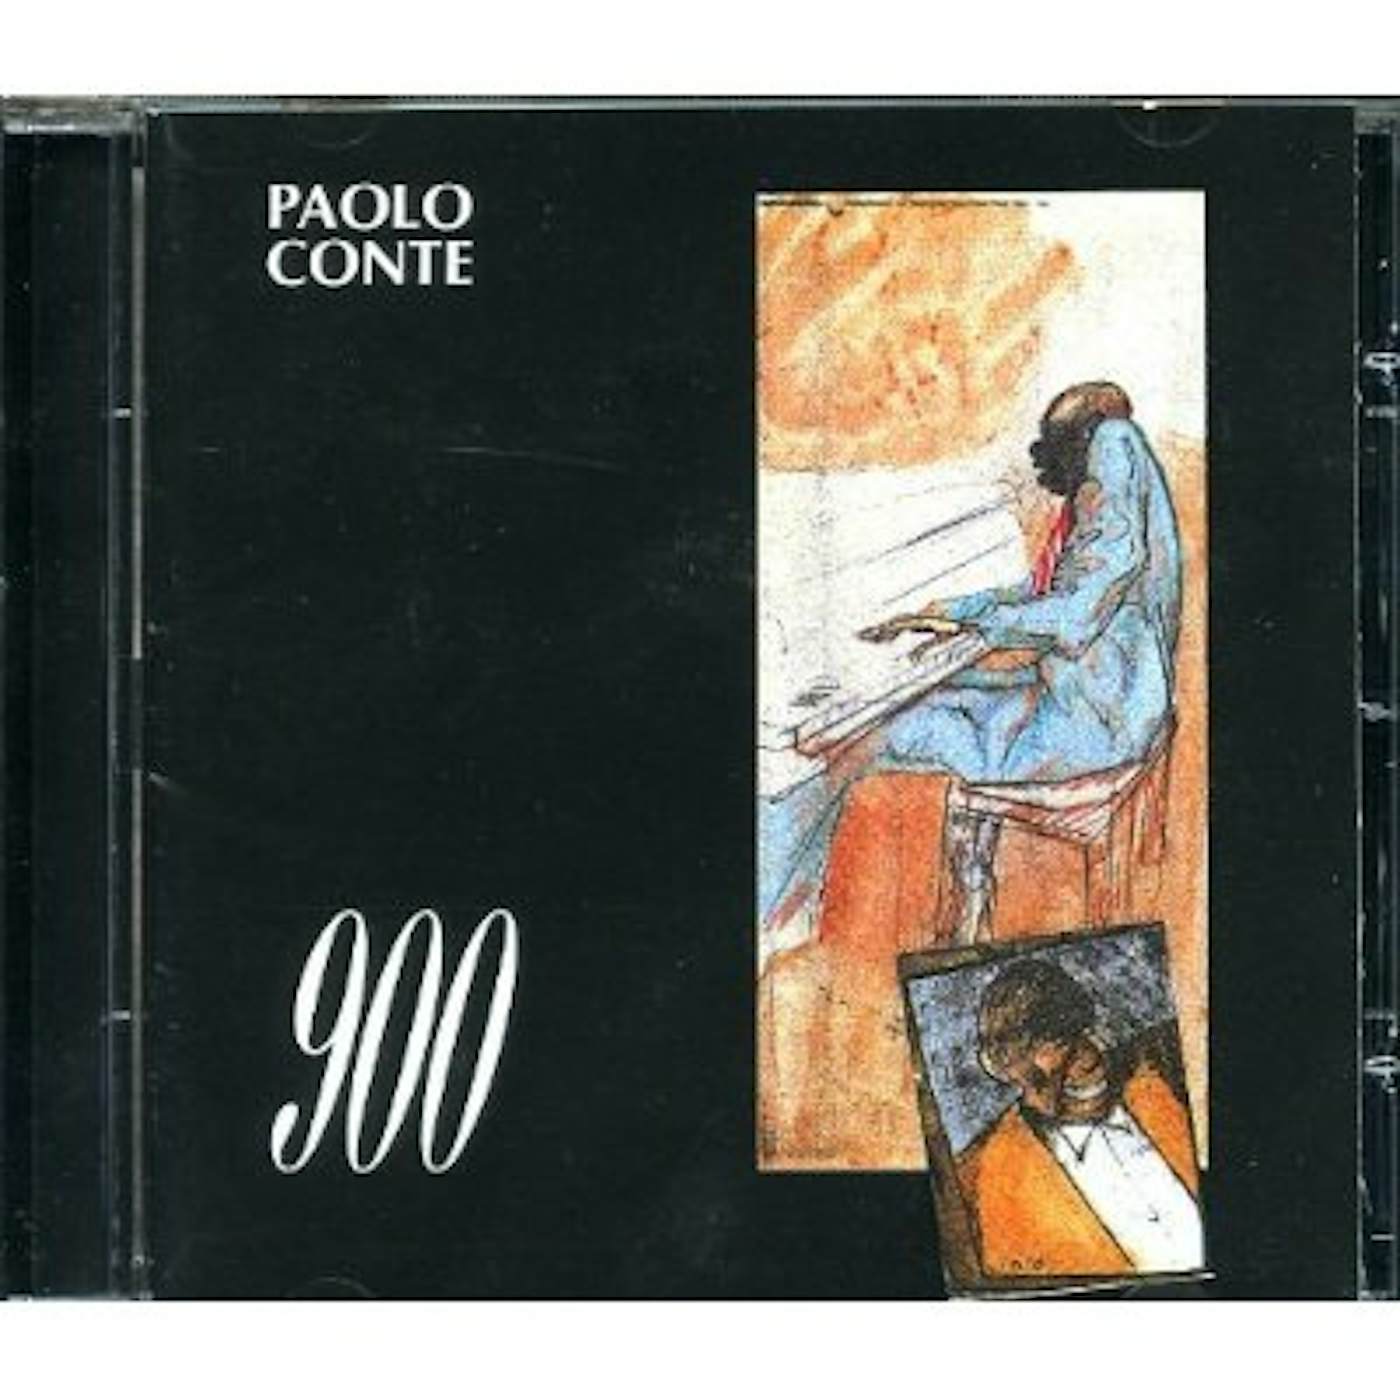 Paolo Conte 900 CD